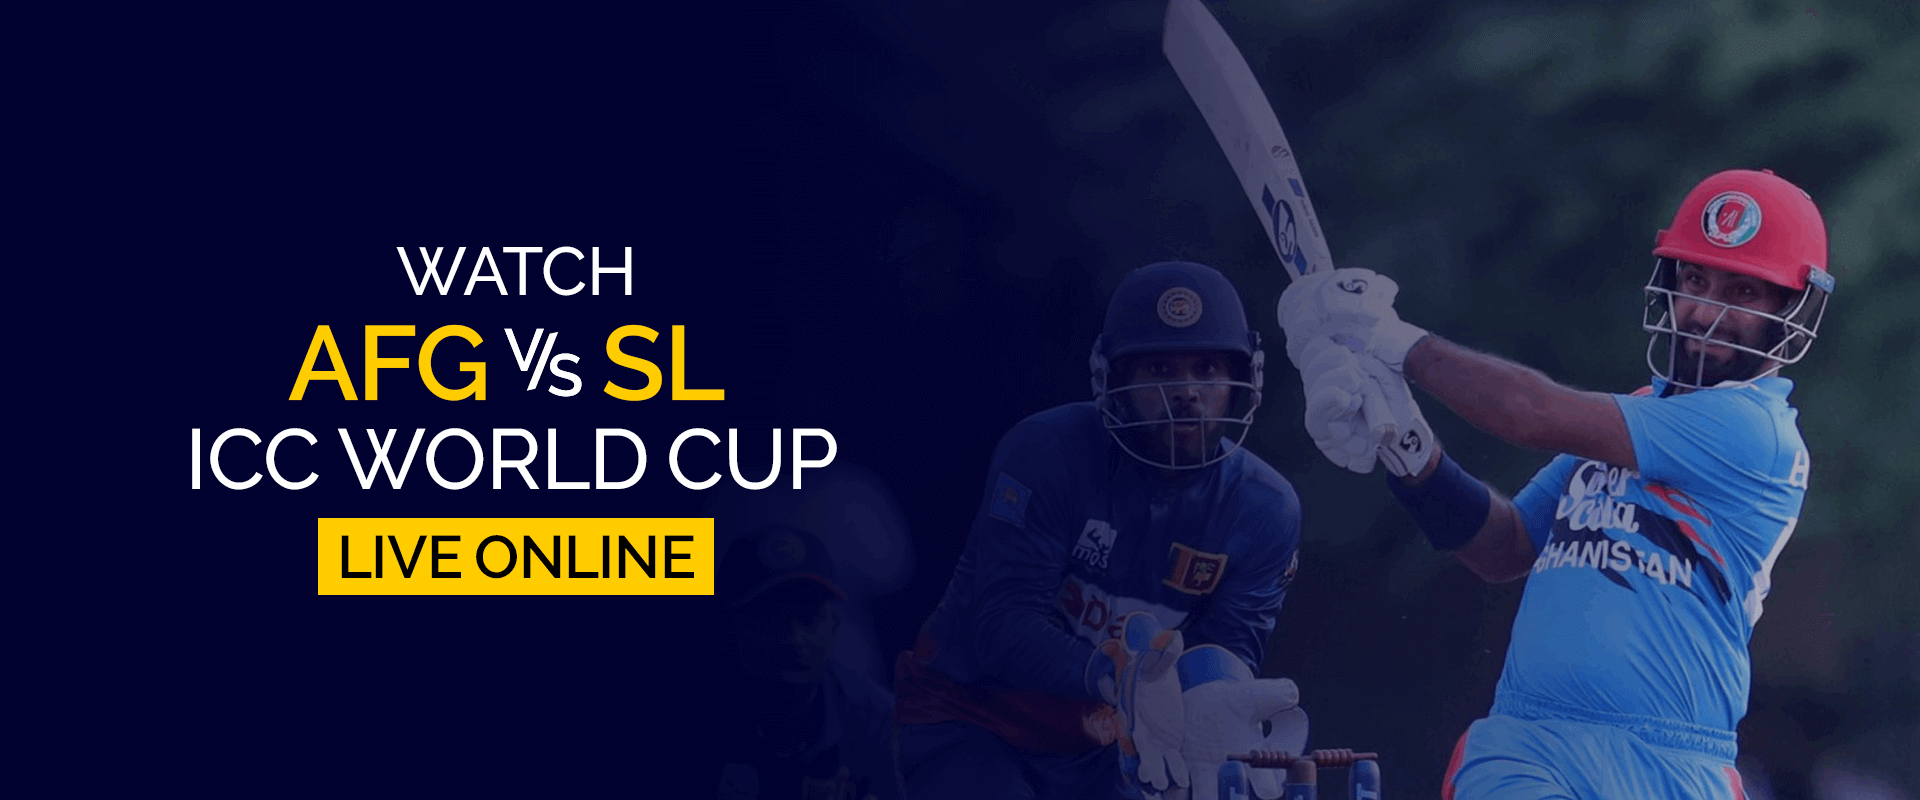 Bekijk Afghanistan vs Sri Lanka ICC World Cup live online